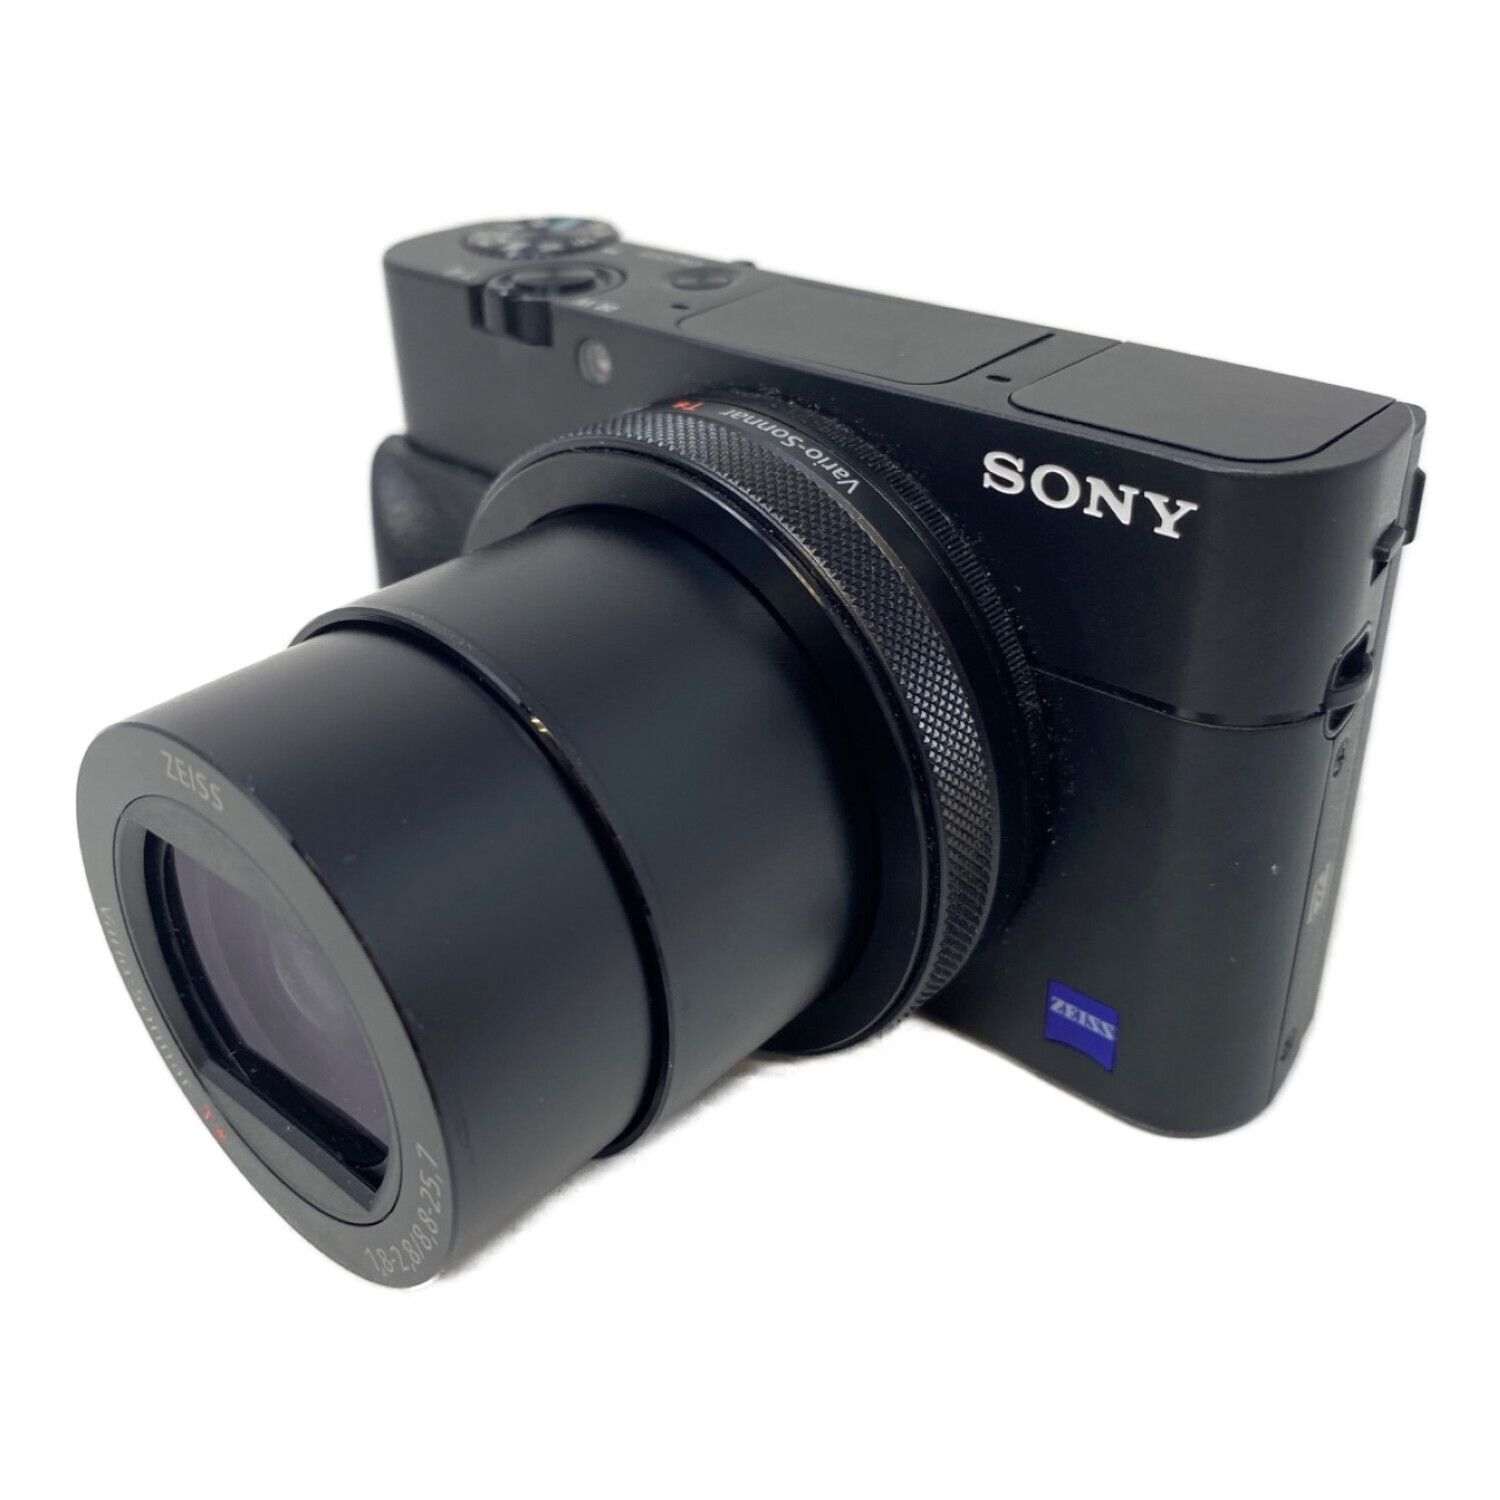 コンパクトデジタルカメラソニー デジタルカメラ 「DSC-RX100M5」 SONY RX100V